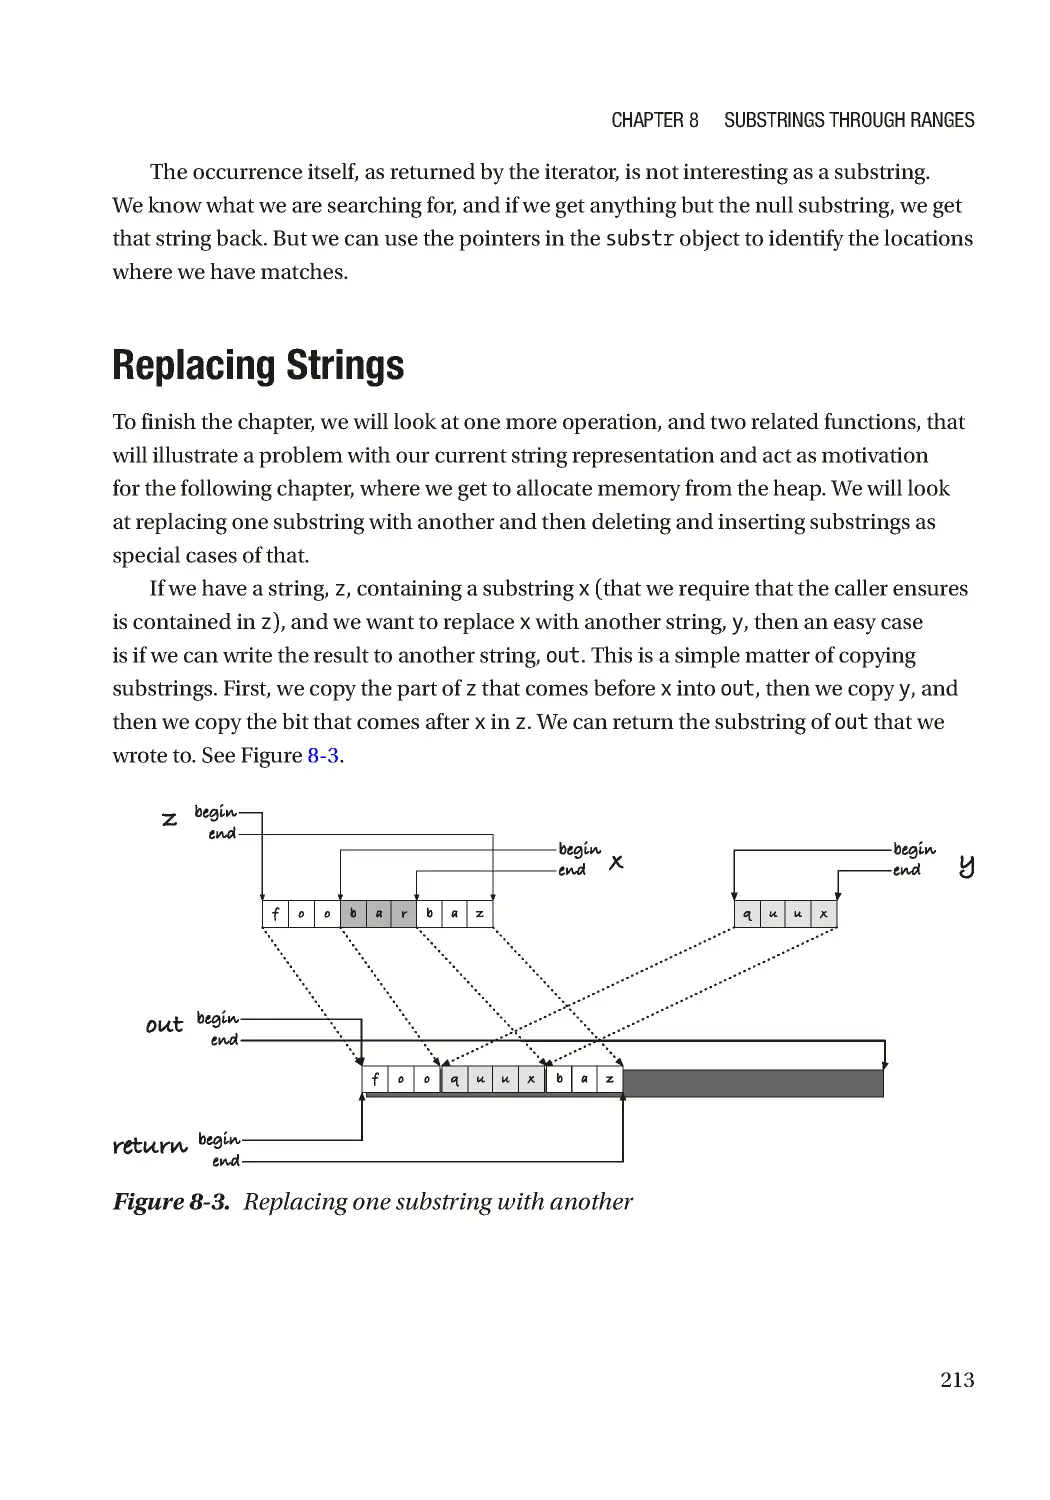 Replacing Strings